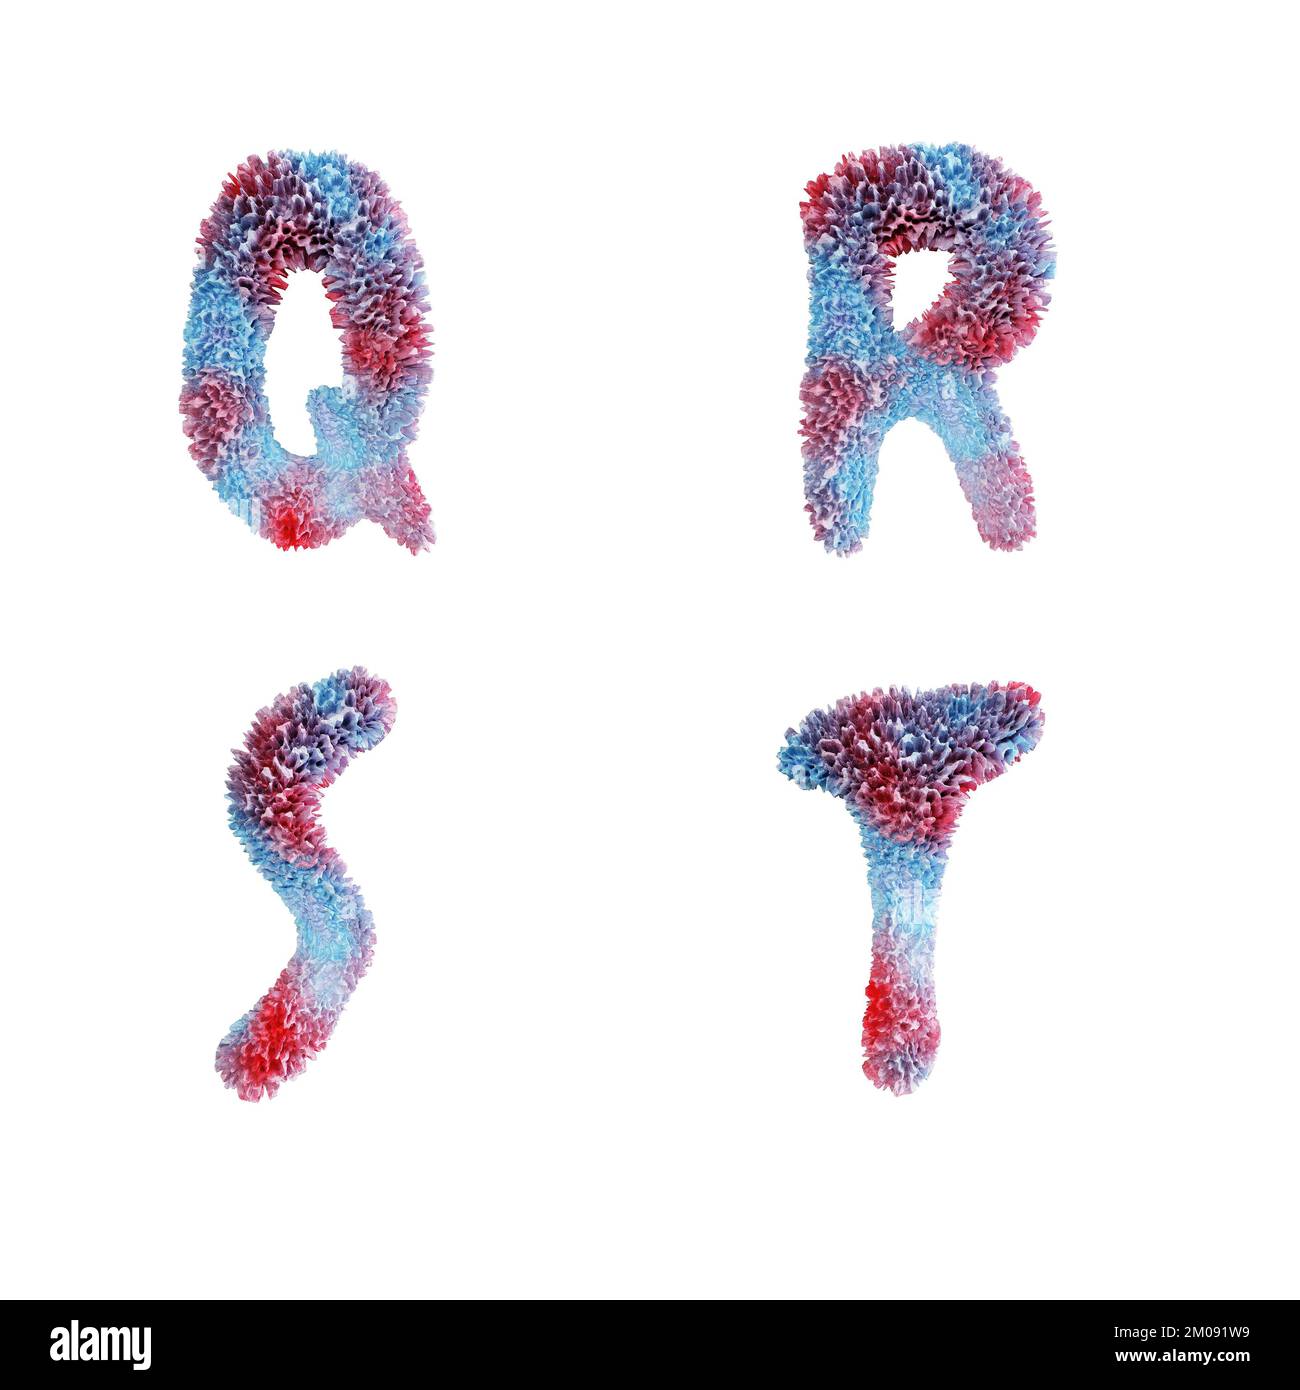 3D rappresentazione dell'alfabeto maiuscolo della barriera corallina - lettere Q-T. Foto Stock